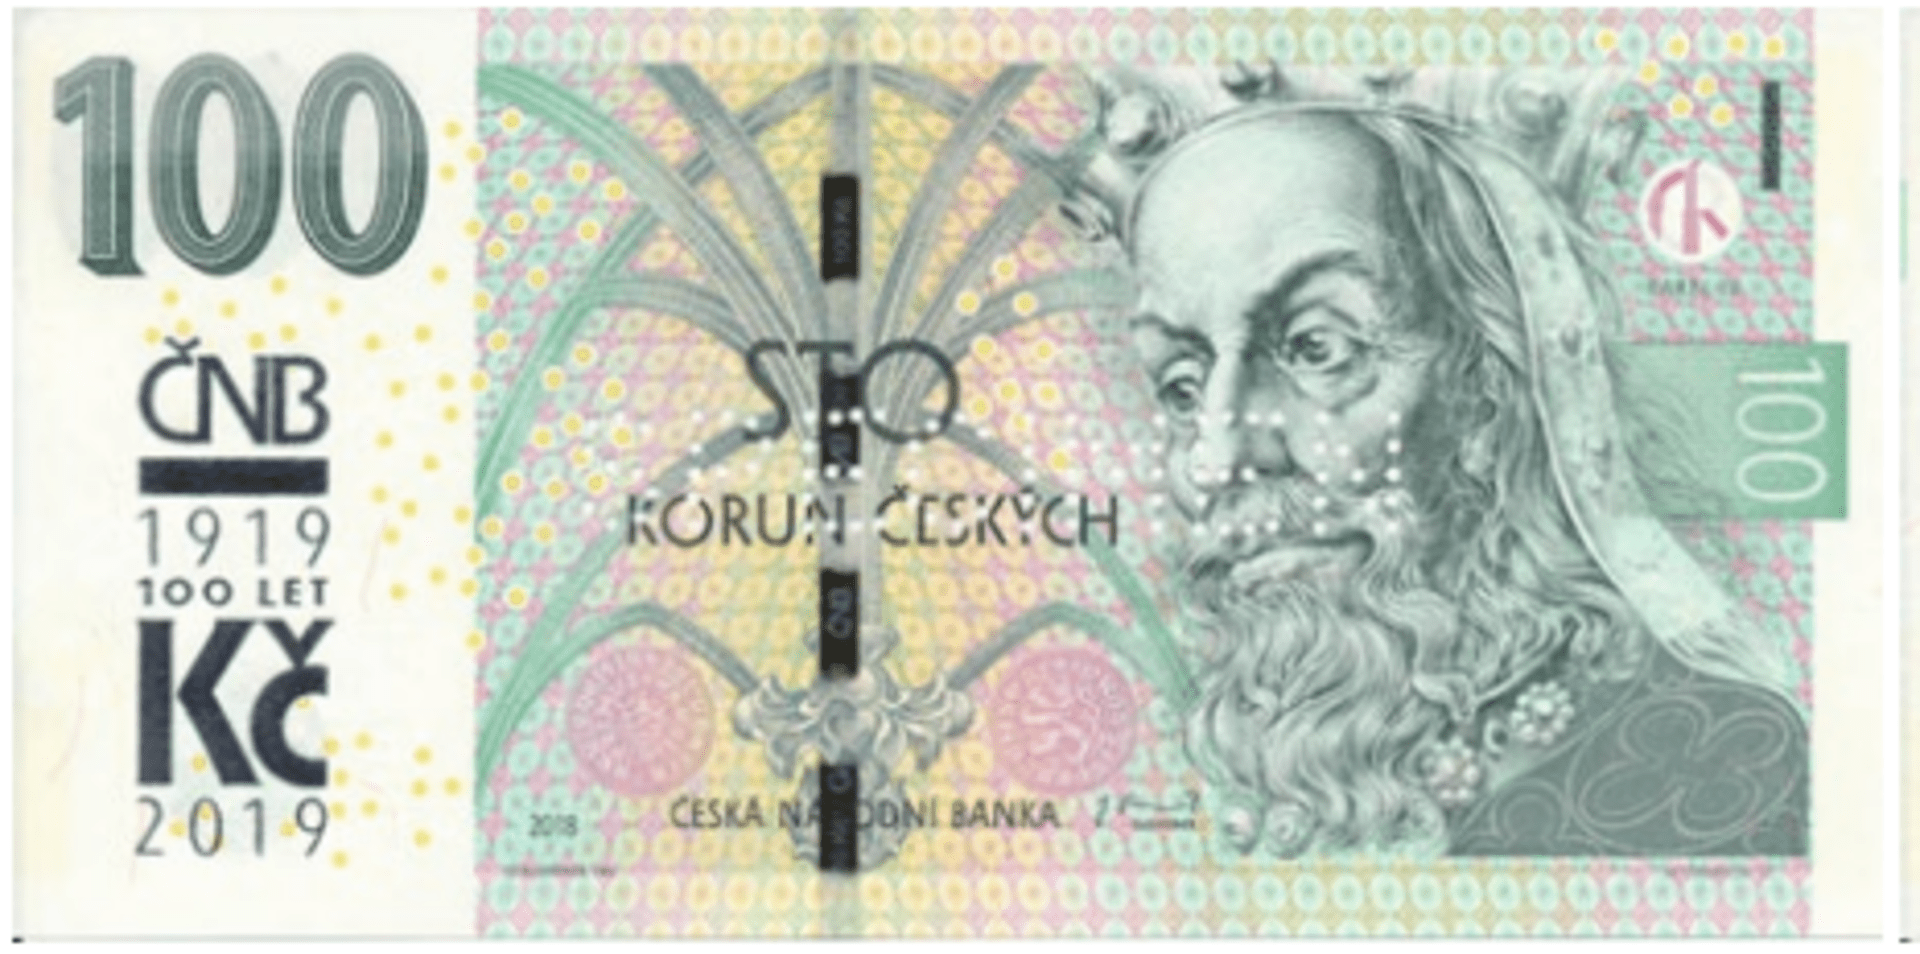 Stokorunu vydala ČNB ke stému výročí české měny.